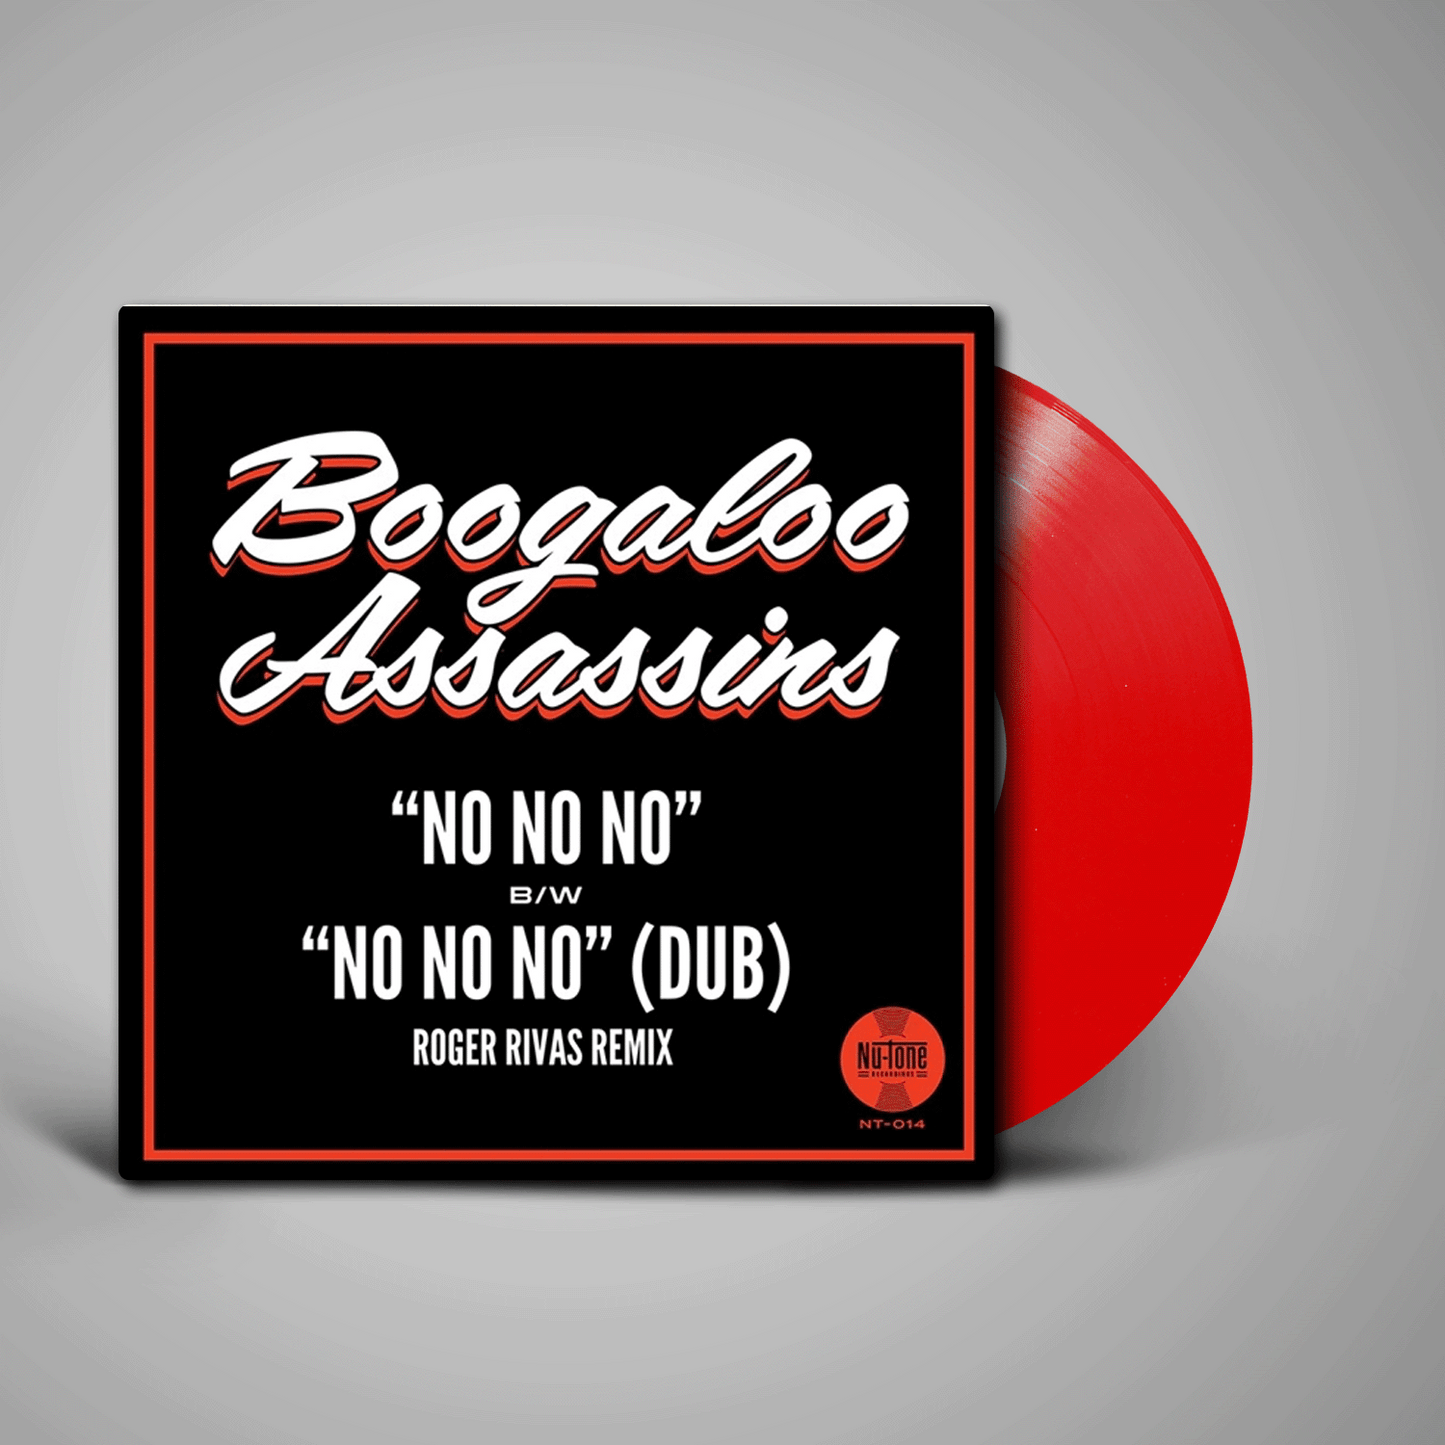 Boogaloo Assassins - No No No / No No No (Roger Rivas Dub Remix)